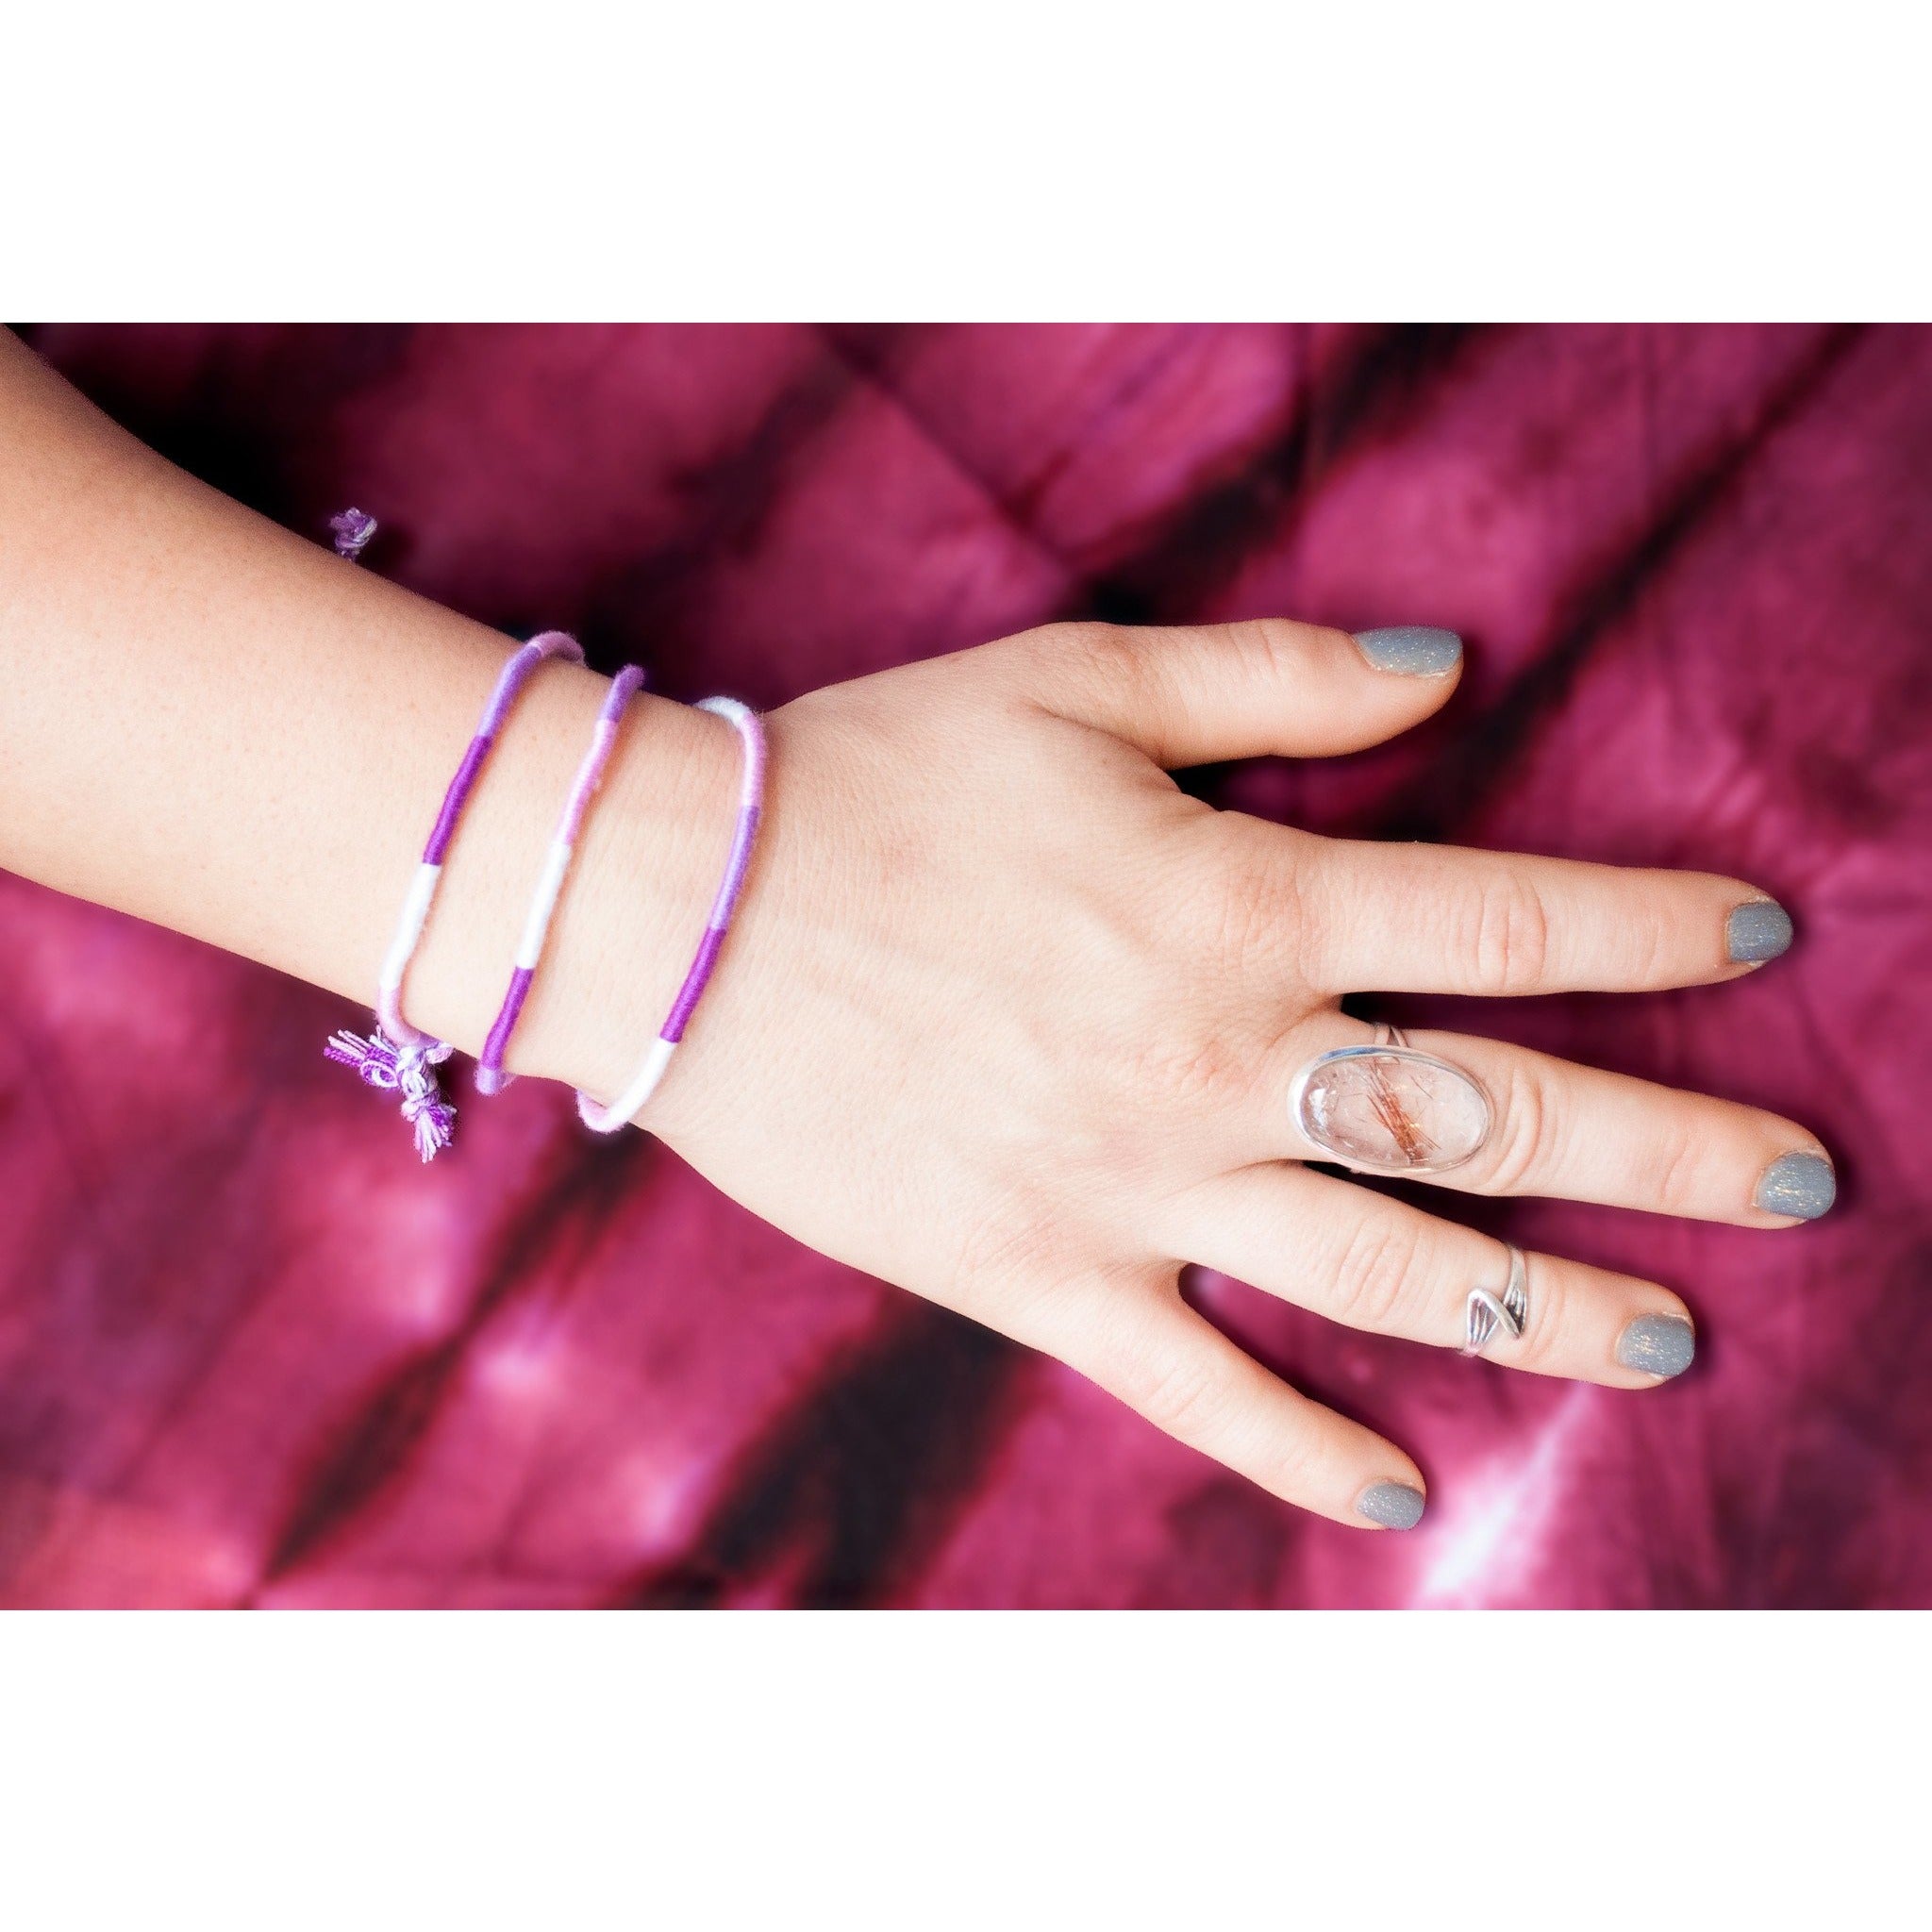 Friendship Bracelet Pack: Lavender - Cali Kind Clothing Co. 